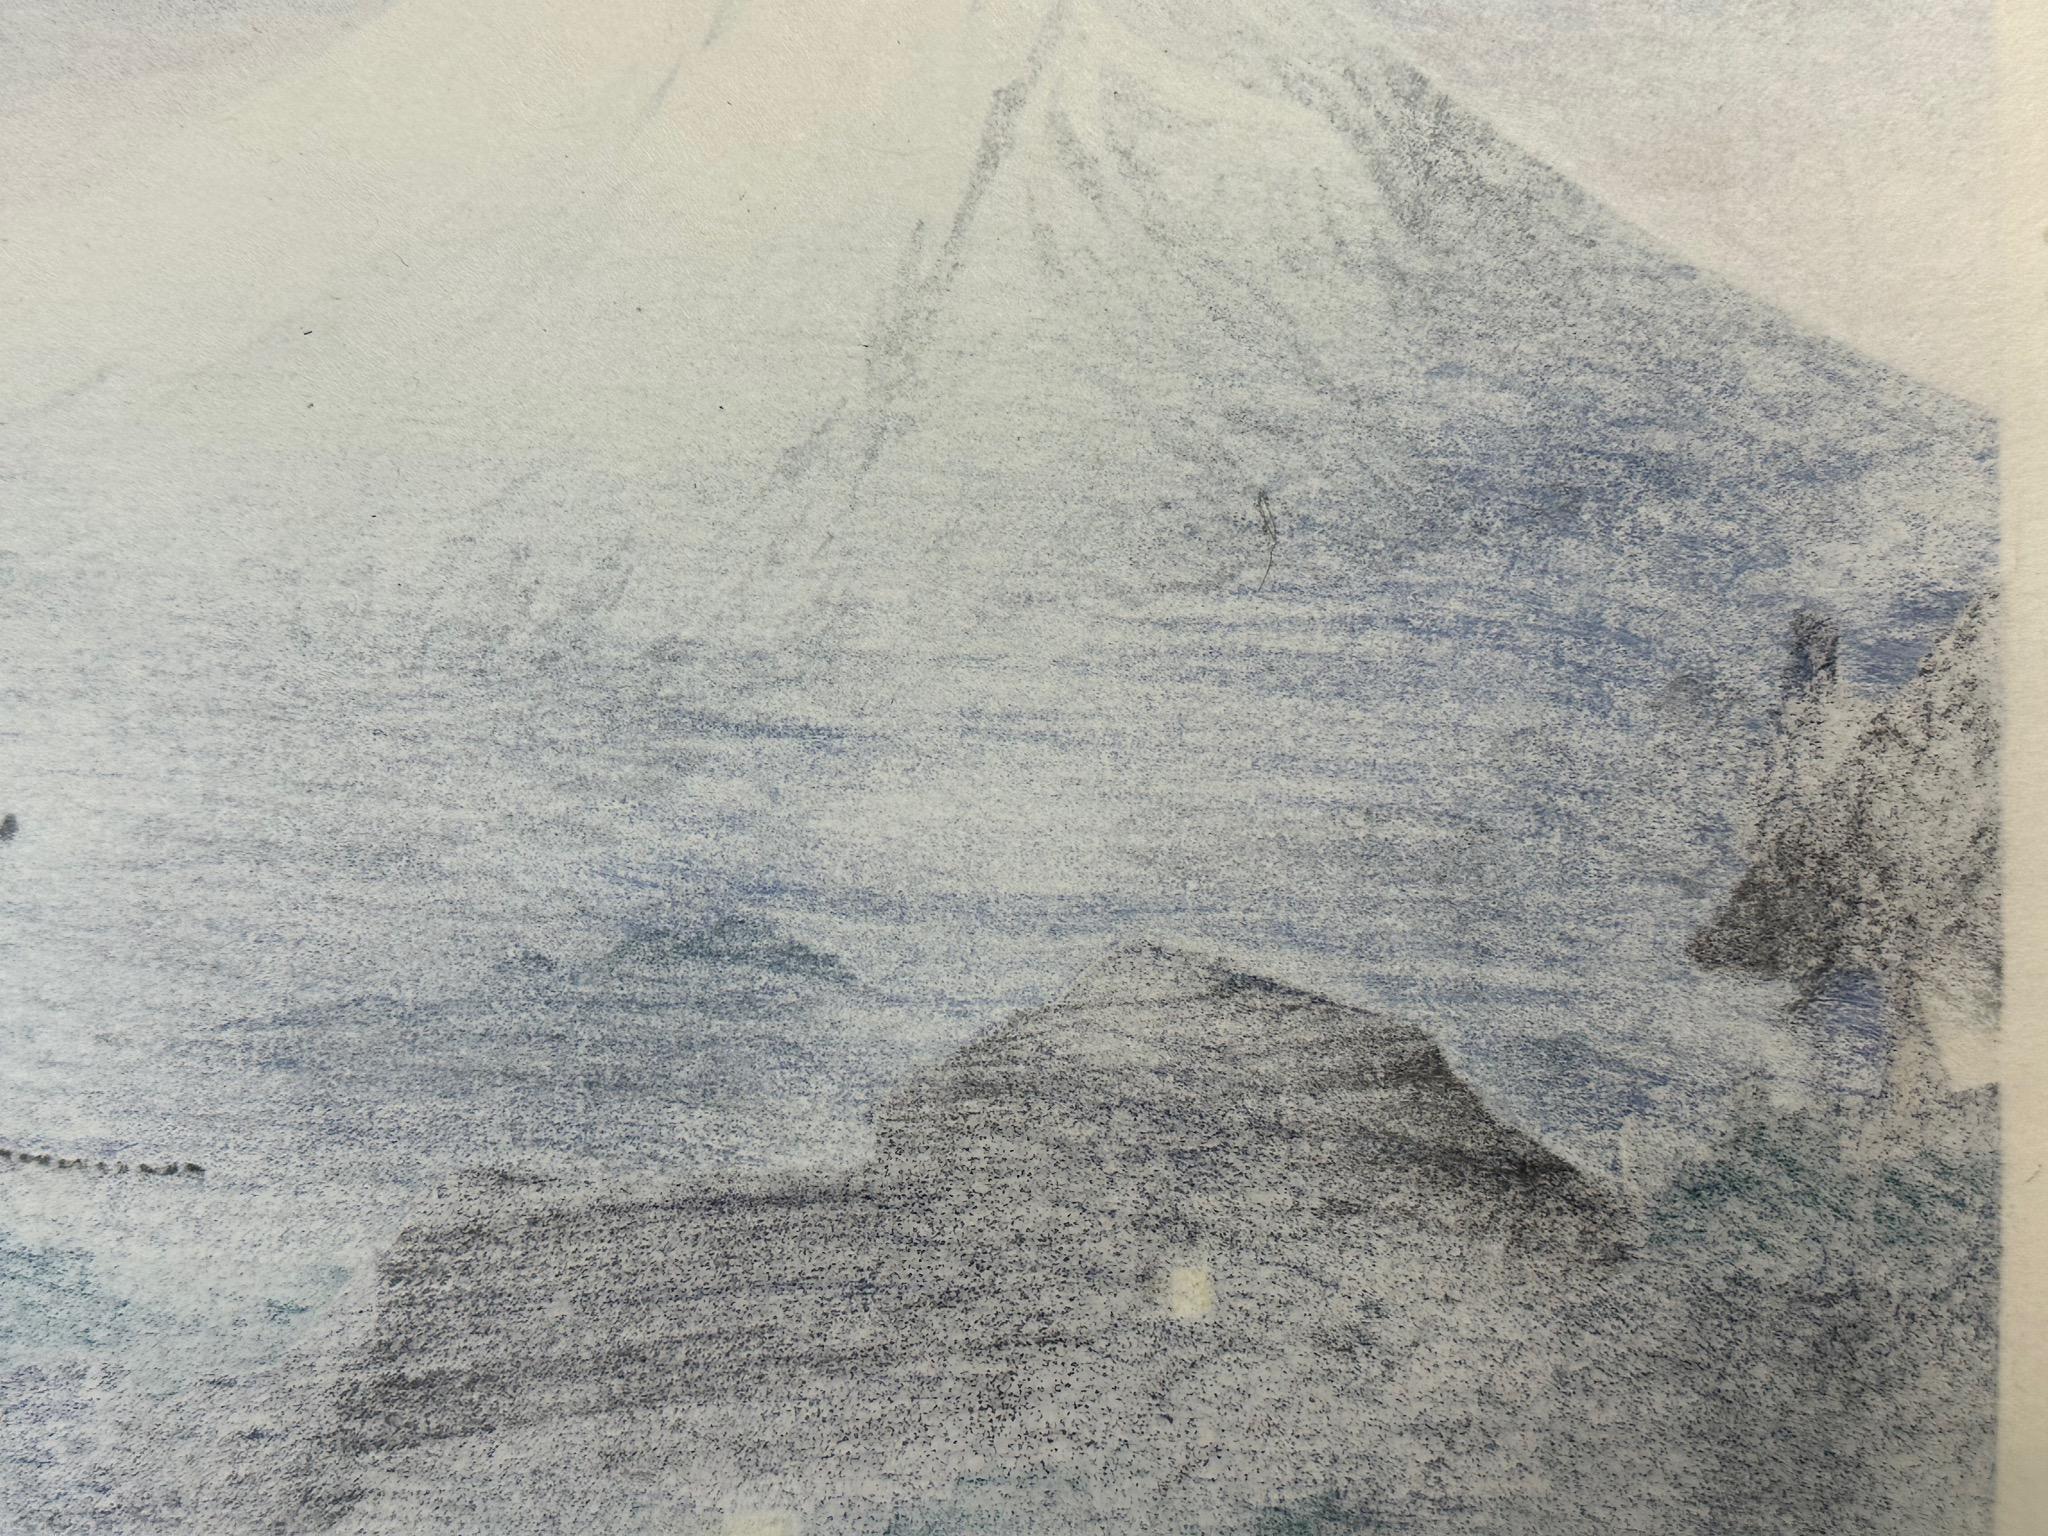 Shotei Takahashi Original Woodblock Print Mt Fuji from Mitsukubo 1936 10